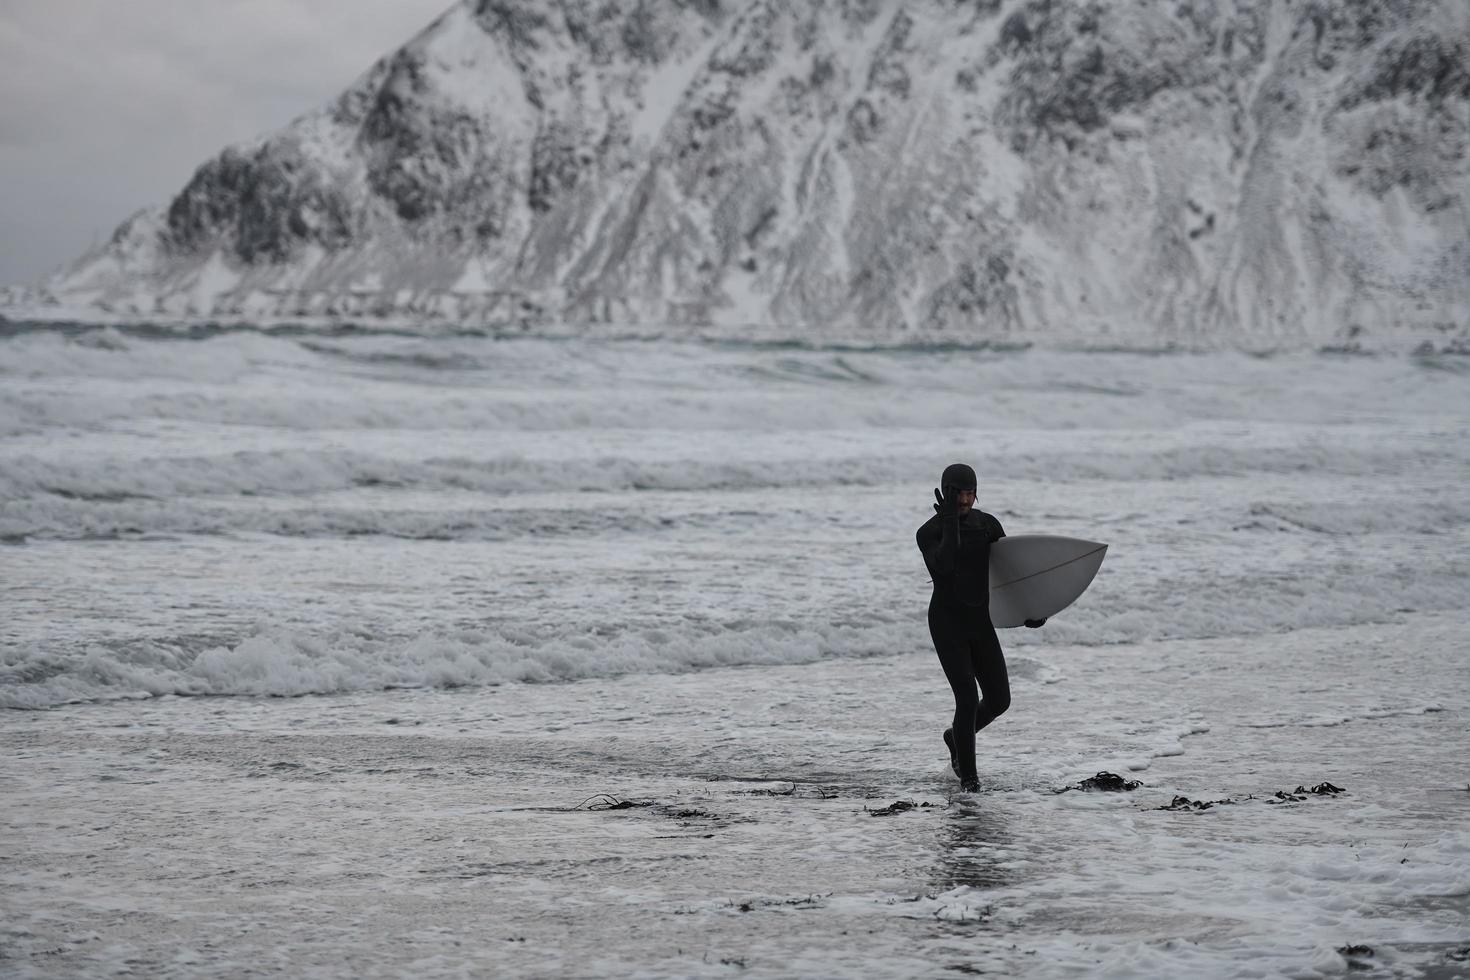 surfista ártico yendo por la playa después de surfear foto